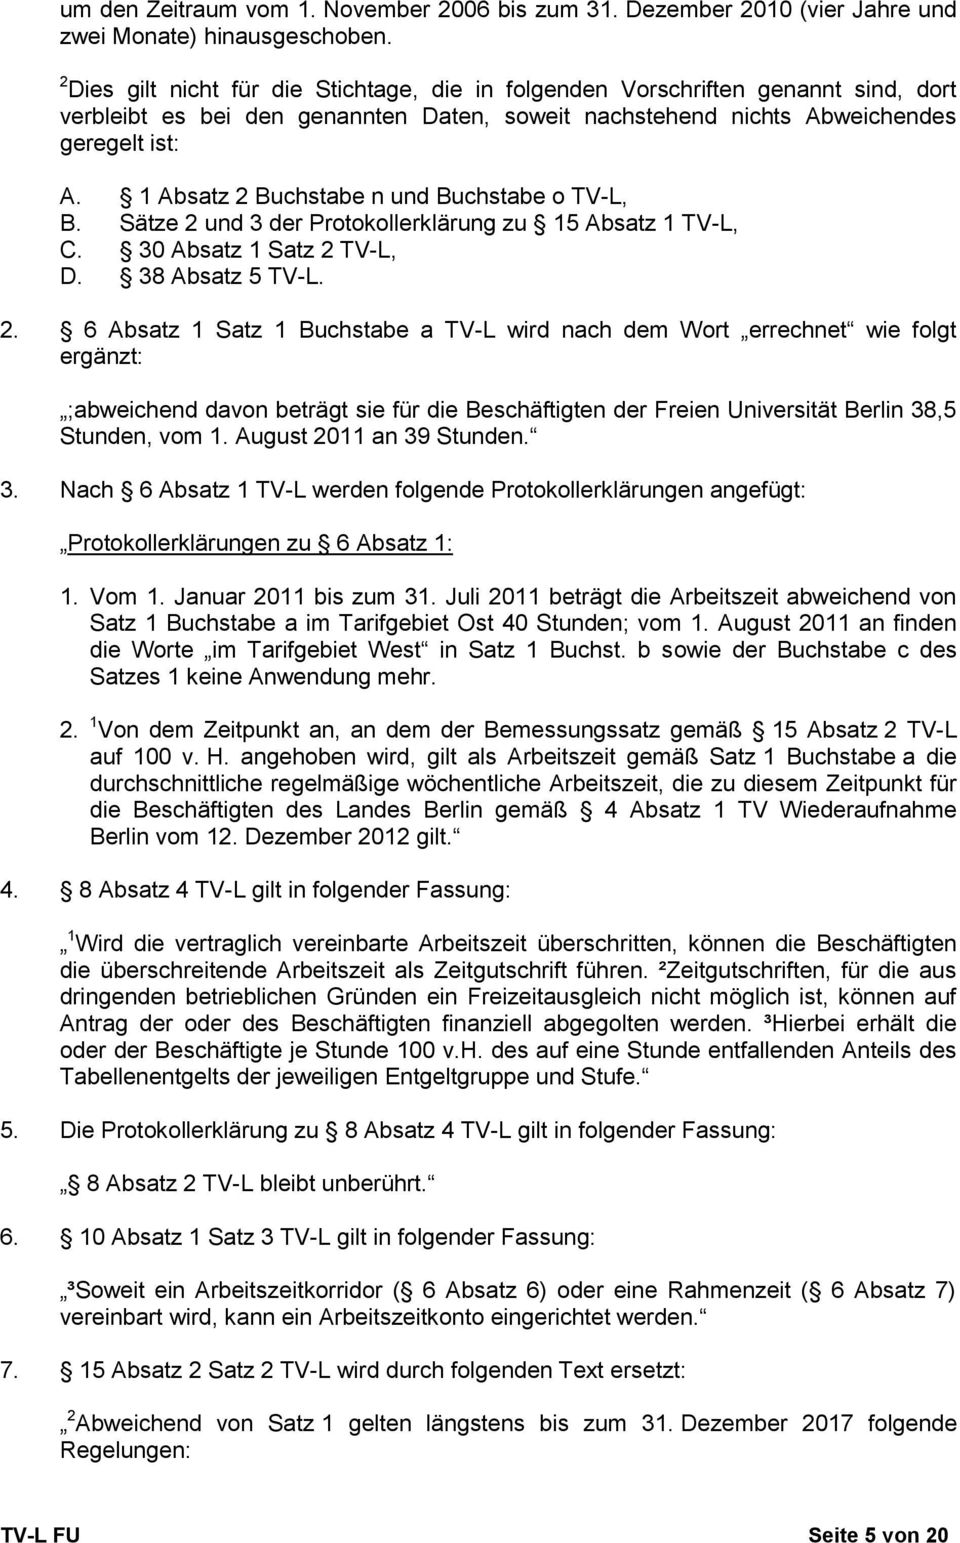 1 Absatz 2 Buchstabe n und Buchstabe o TV-L, B. Sätze 2 und 3 der Protokollerklärung zu 15 Absatz 1 TV-L, C. 30 Absatz 1 Satz 2 TV-L, D. 38 Absatz 5 TV-L. 2. 6 Absatz 1 Satz 1 Buchstabe a TV-L wird nach dem Wort errechnet wie folgt ergänzt: ;abweichend davon beträgt sie für die Beschäftigten der Freien Universität Berlin 38,5 Stunden, vom 1.